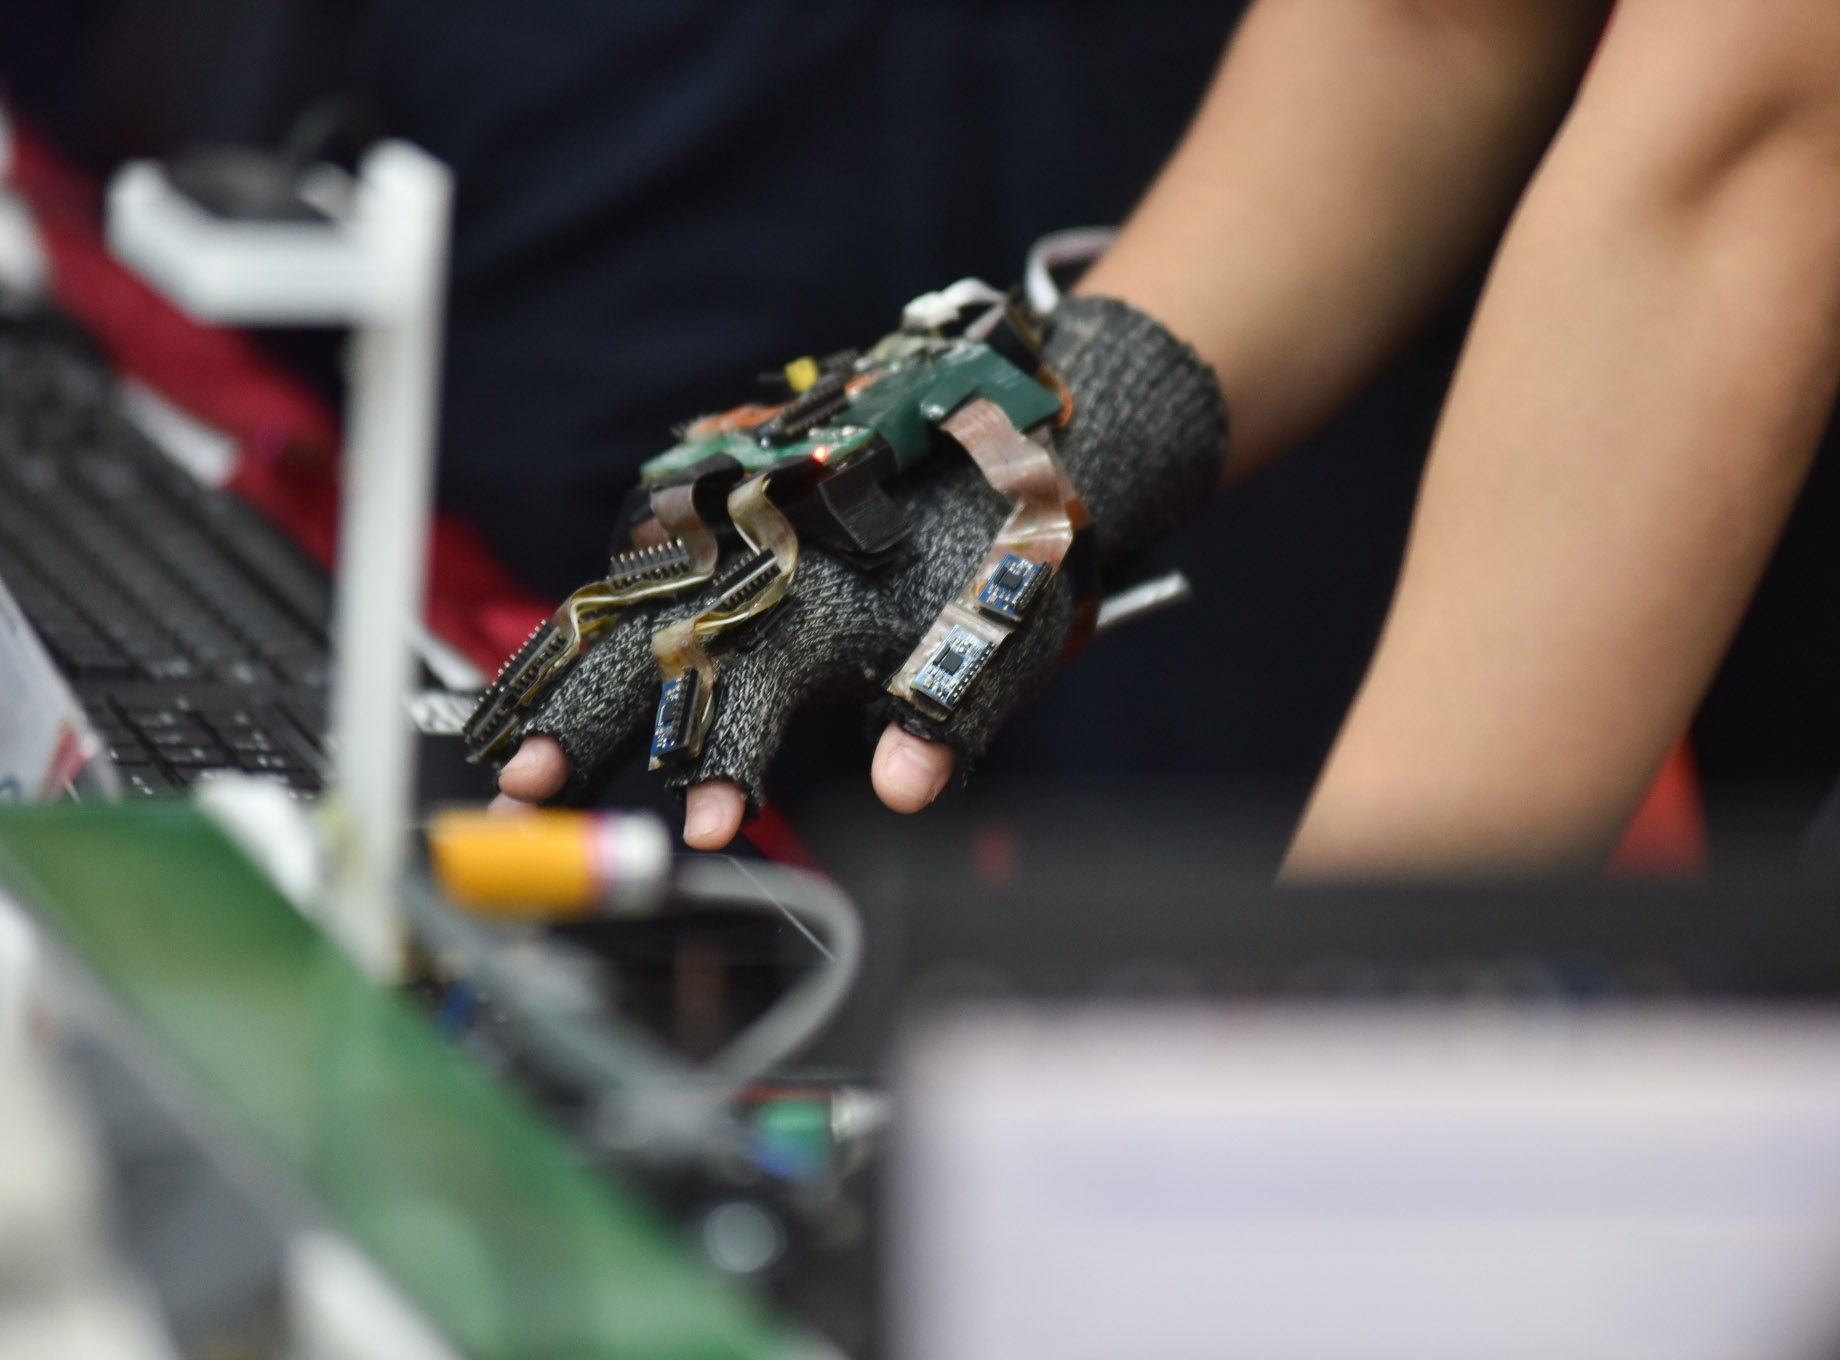 Trưng bày găng tay thực tế ảo ứng dụng trong điều khiển và ngôn ngữ ký hiệu tại Hội nghị Tổng kết hoạt động sinh viên nghiên cứu khoa học ngày 31/5/2019 của trường ĐH Bách Khoa Hà Nội. Ảnh: HUST CCPR